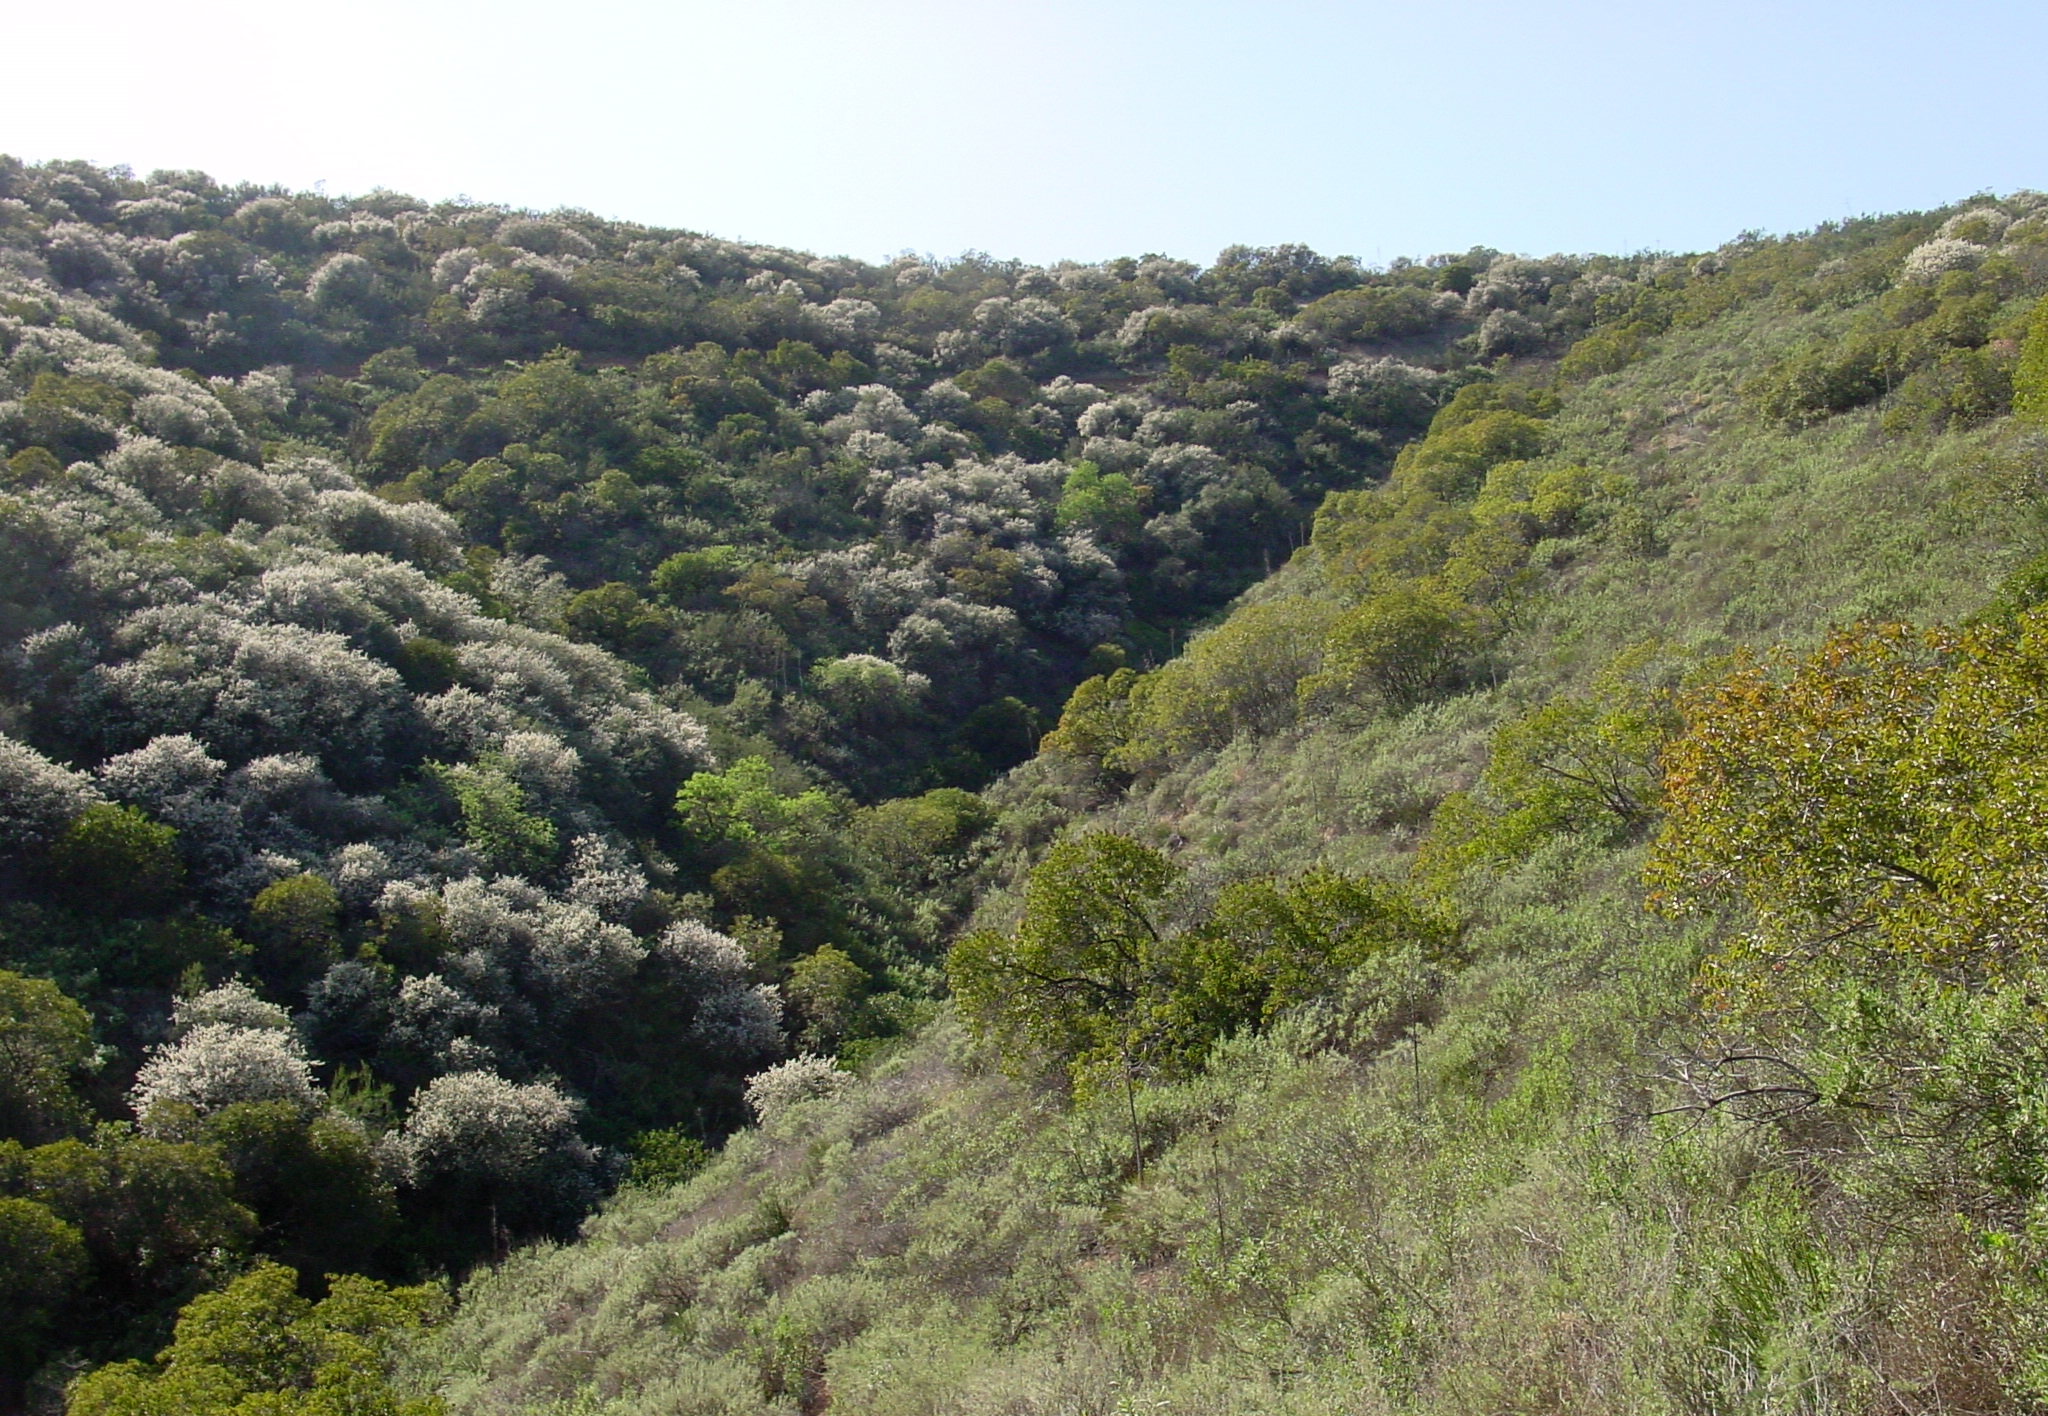 Dos pendientes se encuentran en el medio, formando una zanja. La ladera izquierda tiene arbustos agrupados muy juntos, pero la vegetación es más escasa en la ladera derecha.